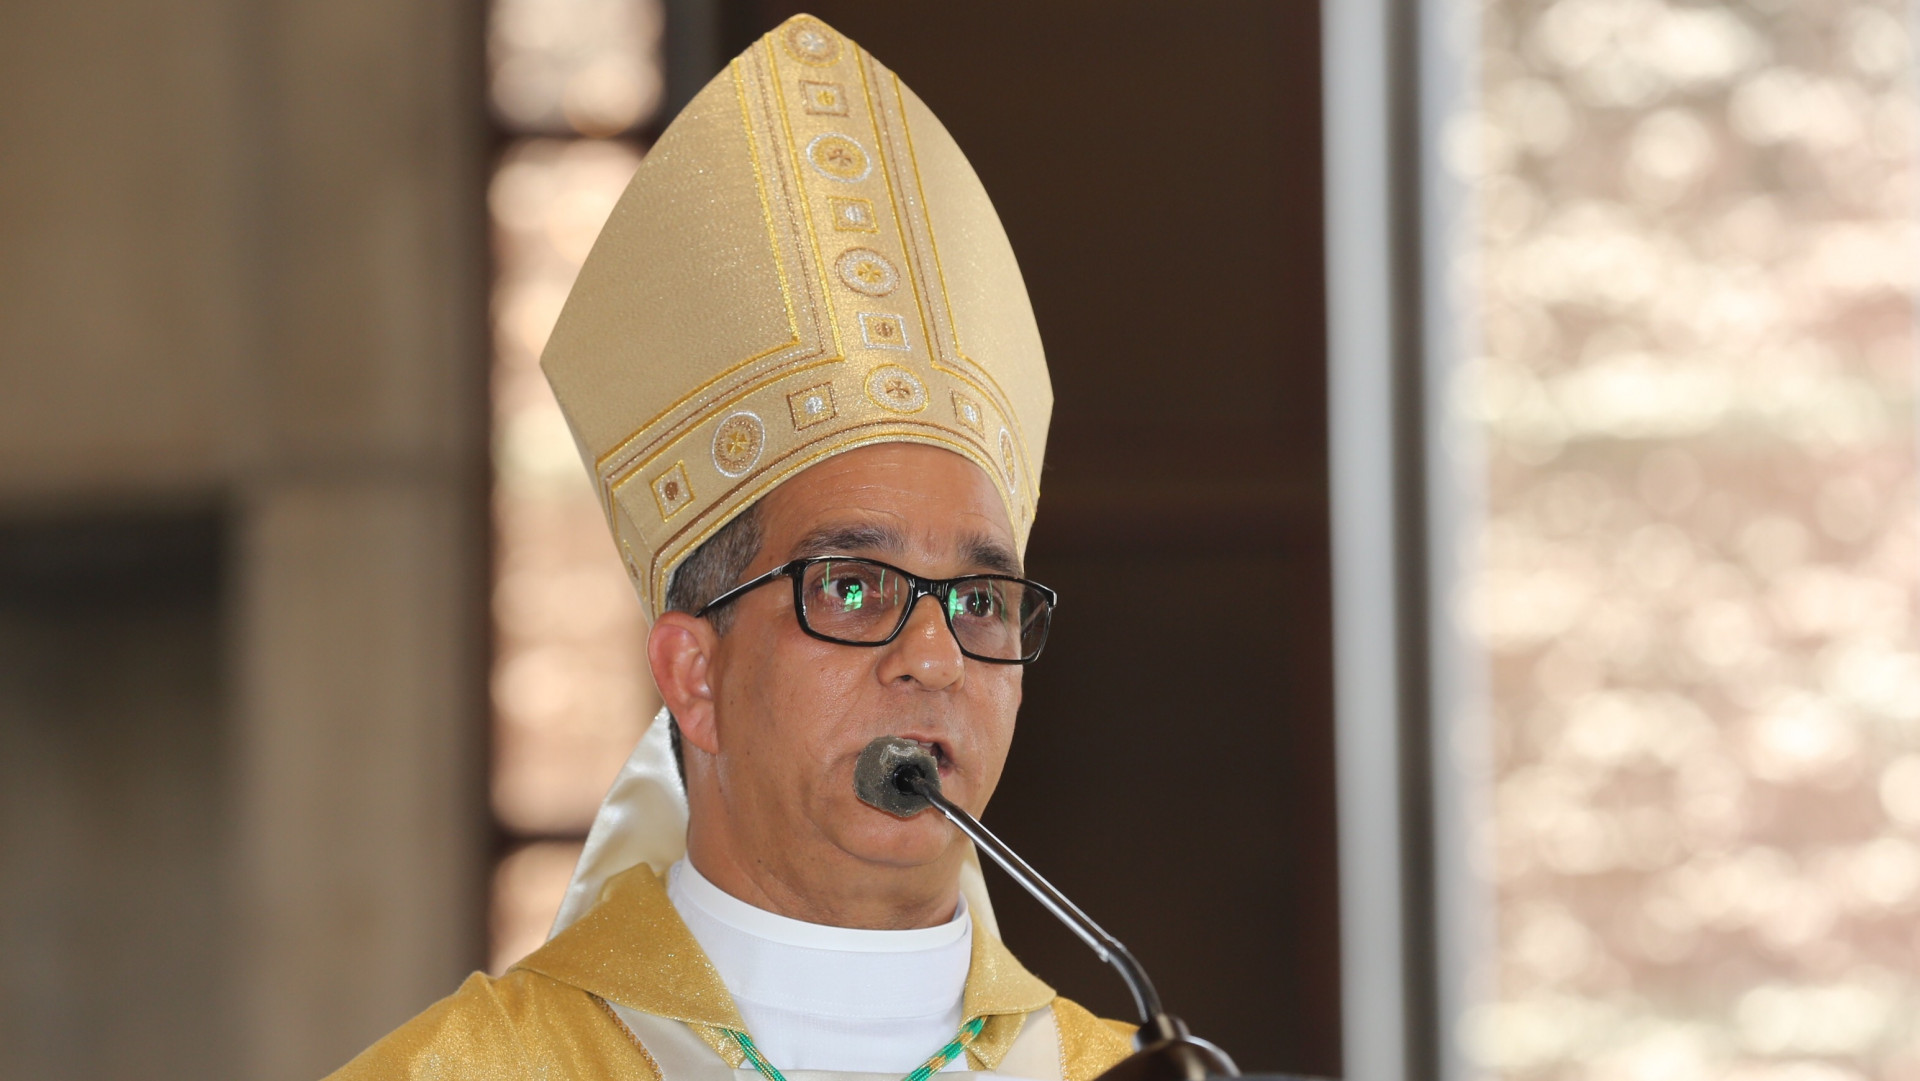 “La corrupción es la principal enfermedad de la patria', afirma arzobispo en ceremonia del Día de Duarte